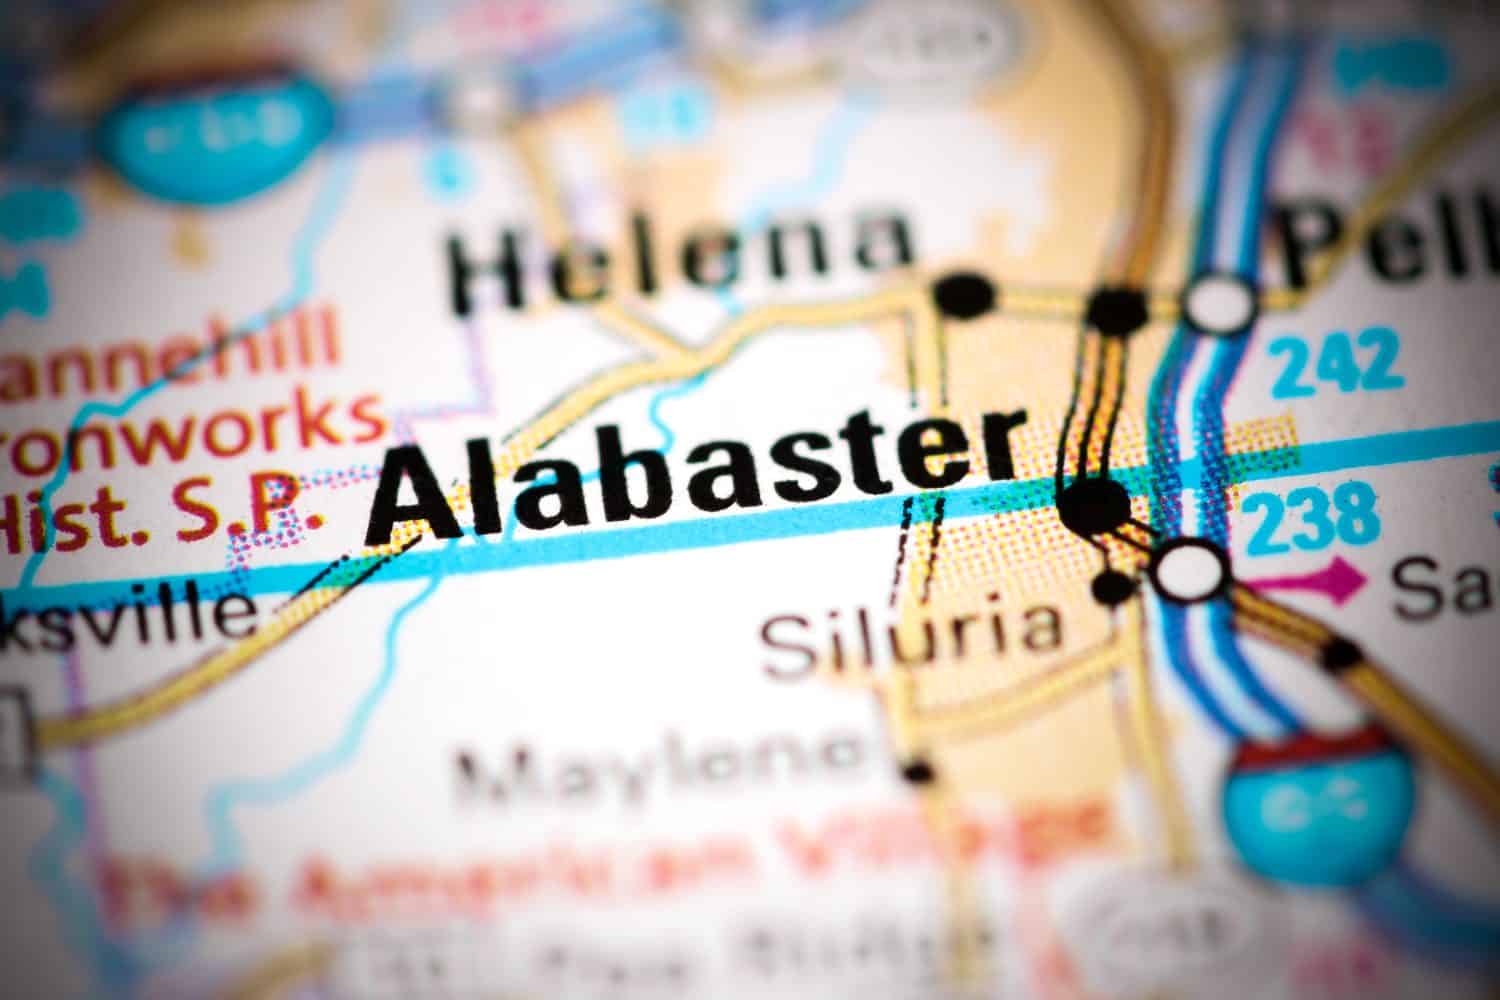 Alabastro.  Alabama.  Stati Uniti su una mappa